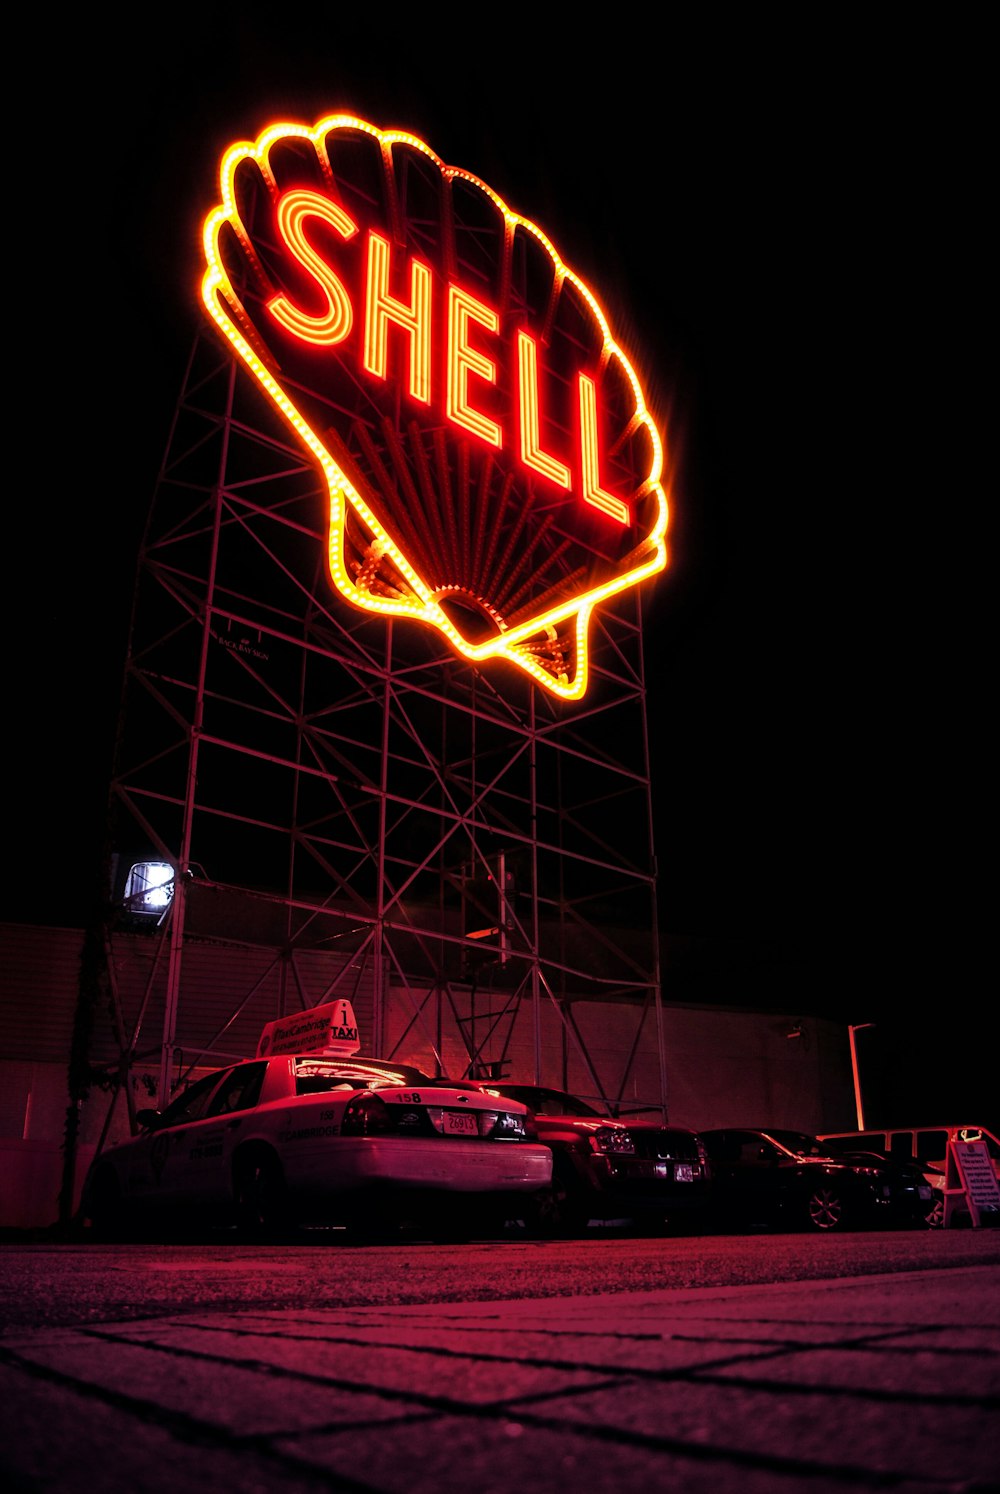 Shell LED-Beschilderung